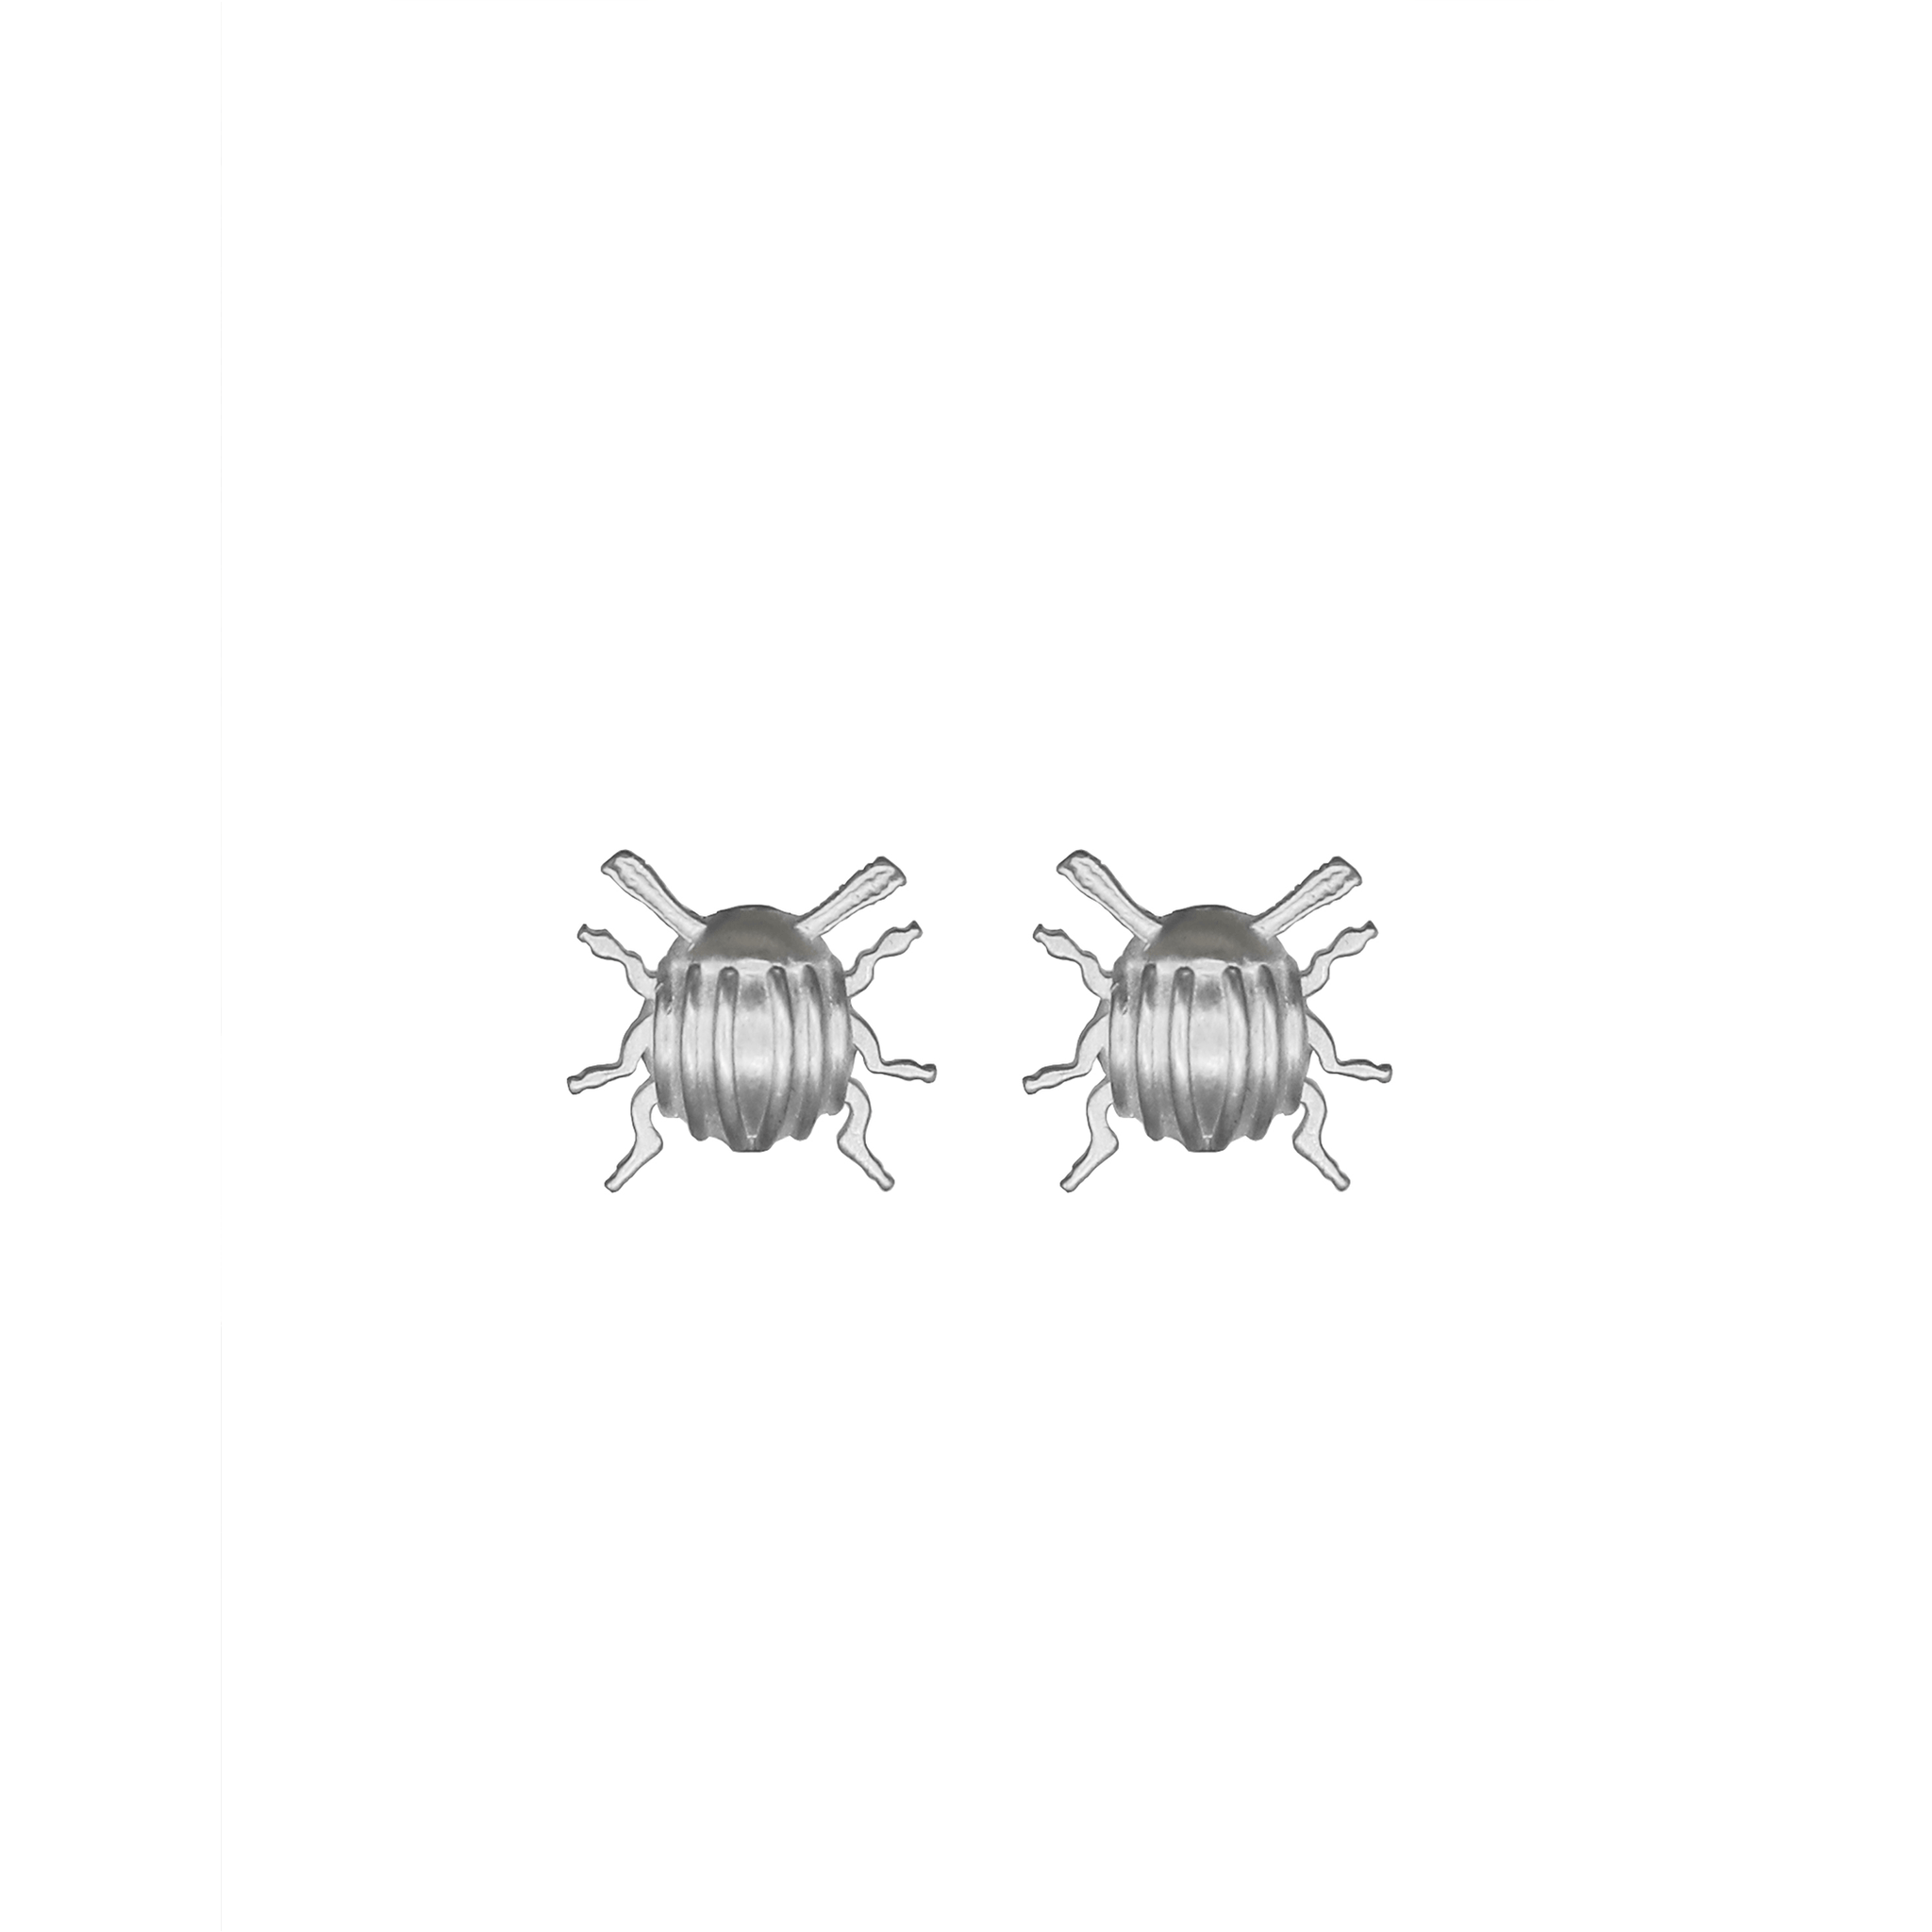 XL Beetle Earrings